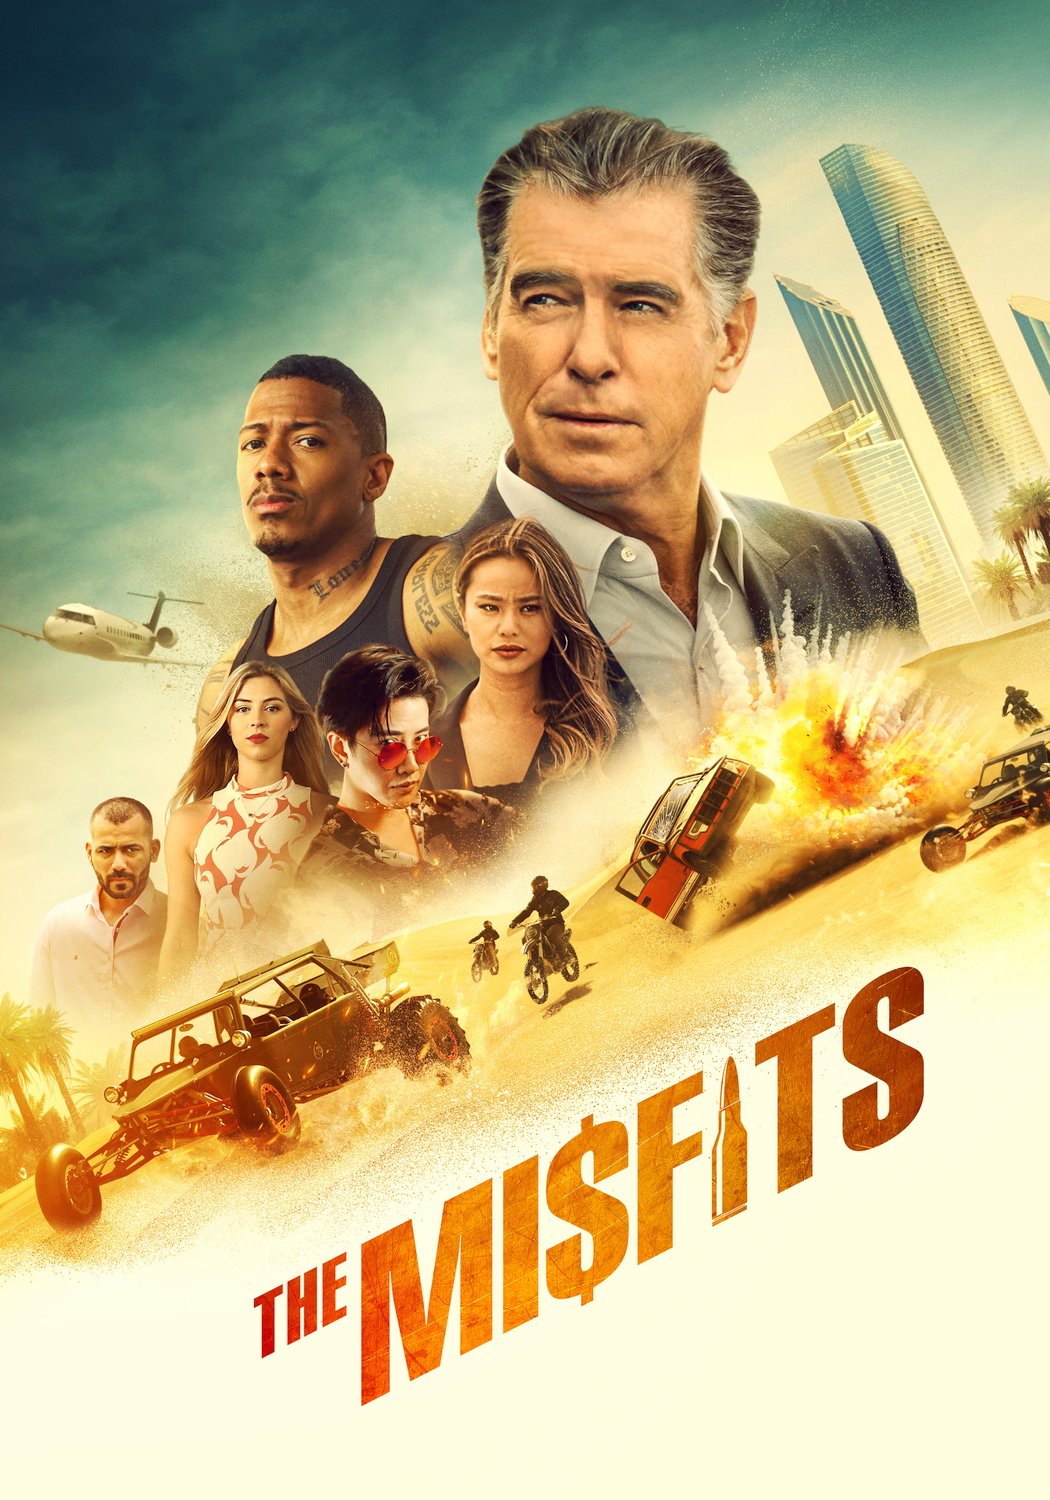 The Misfits Film 2021